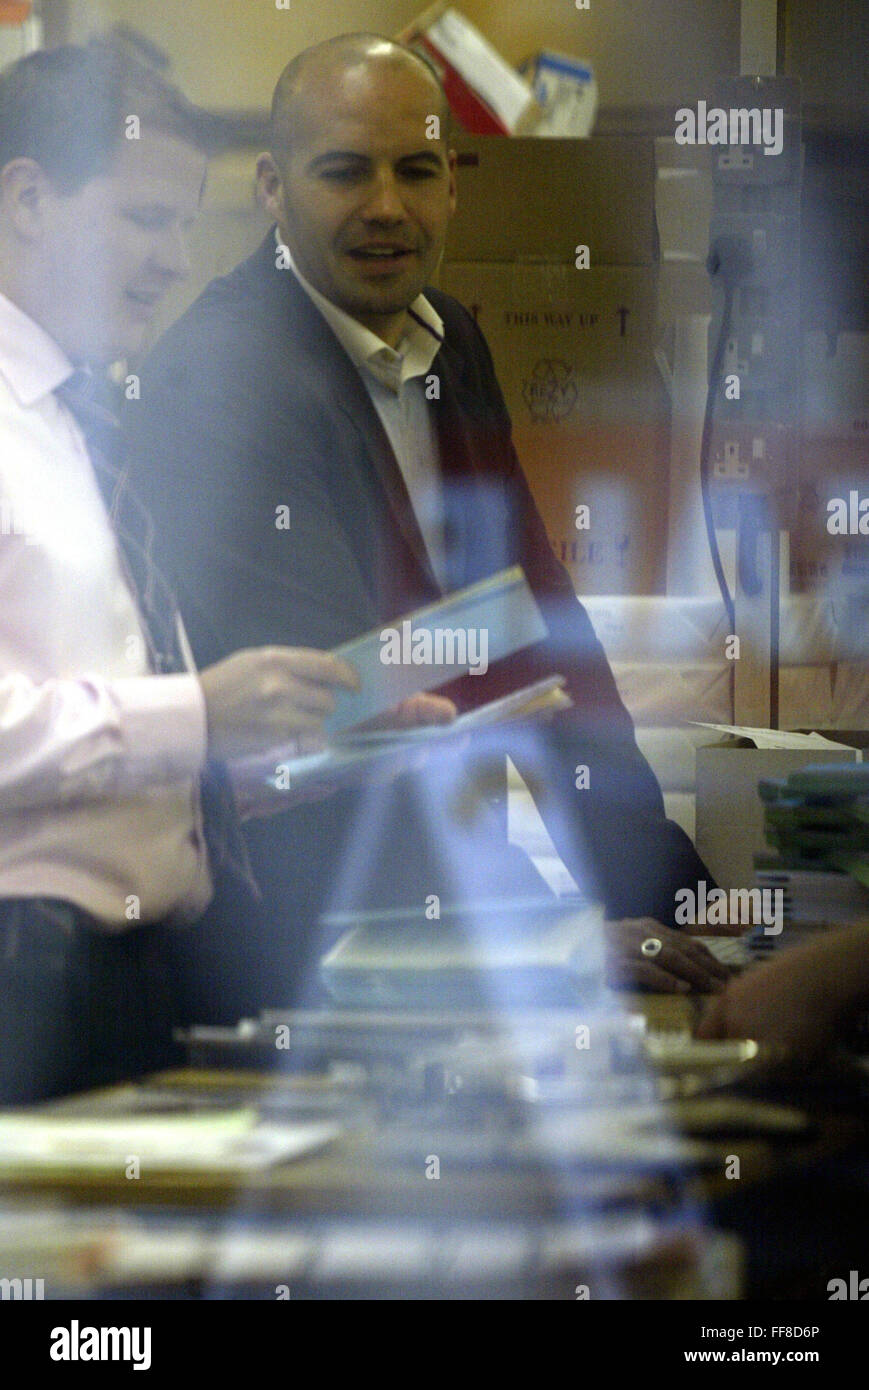 Billy Zane unterwegs in der Druckerei London 4 Bilder (Kredit Bild © Jack Ludlam) Stockfoto